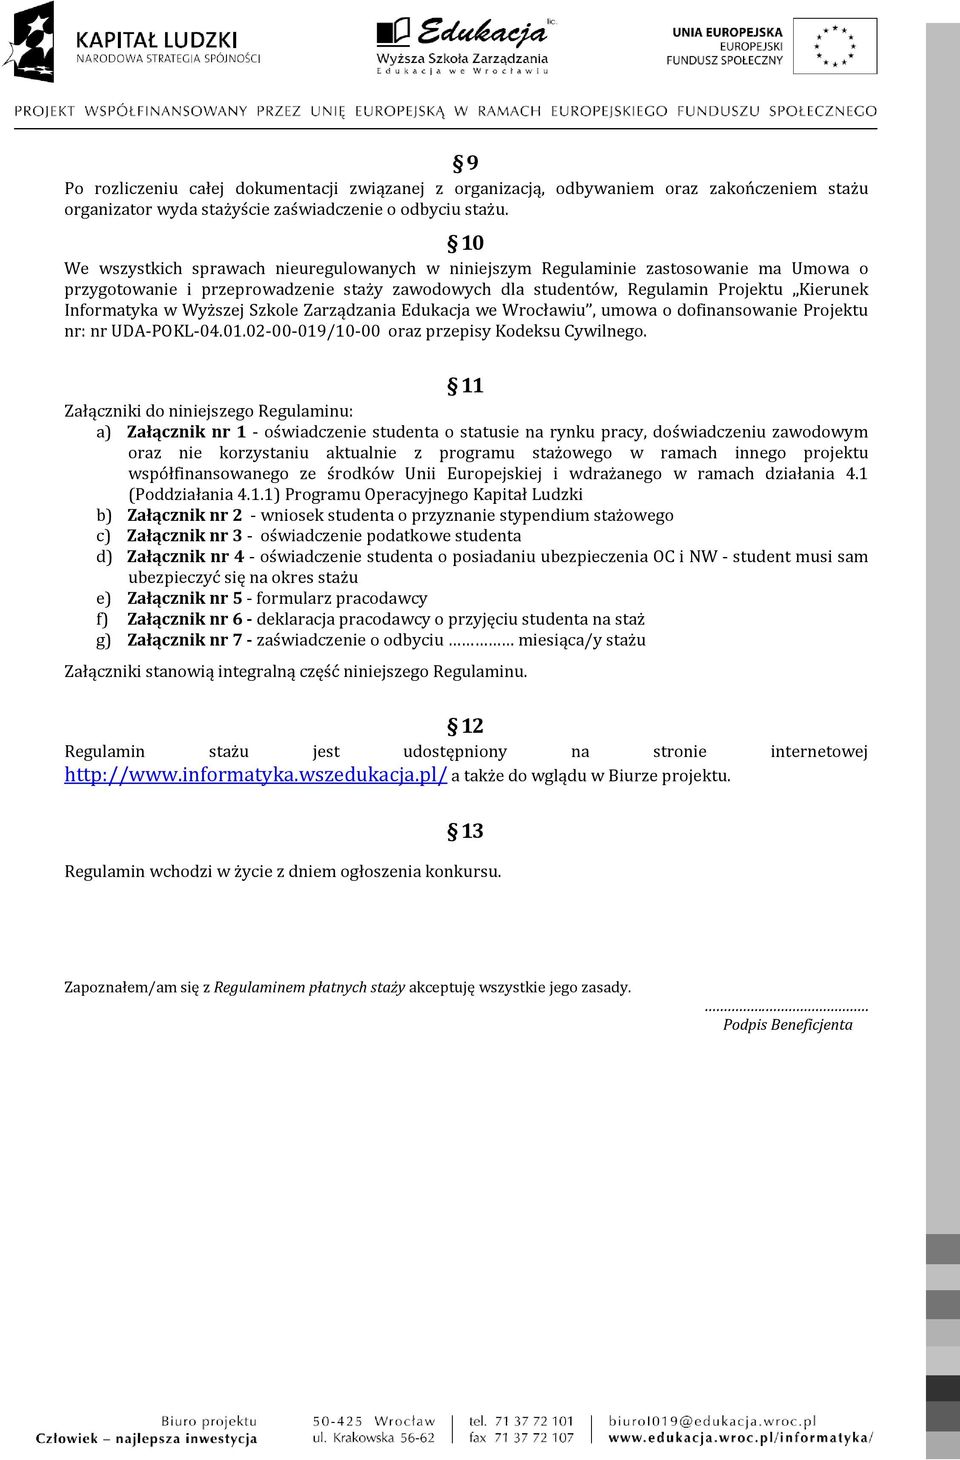 Wyższej Szkole Zarządzania Edukacja we Wrocławiu, umowa o dofinansowanie Projektu nr: nr UDA-POKL-04.01.02-00-019/10-00 oraz przepisy Kodeksu Cywilnego.